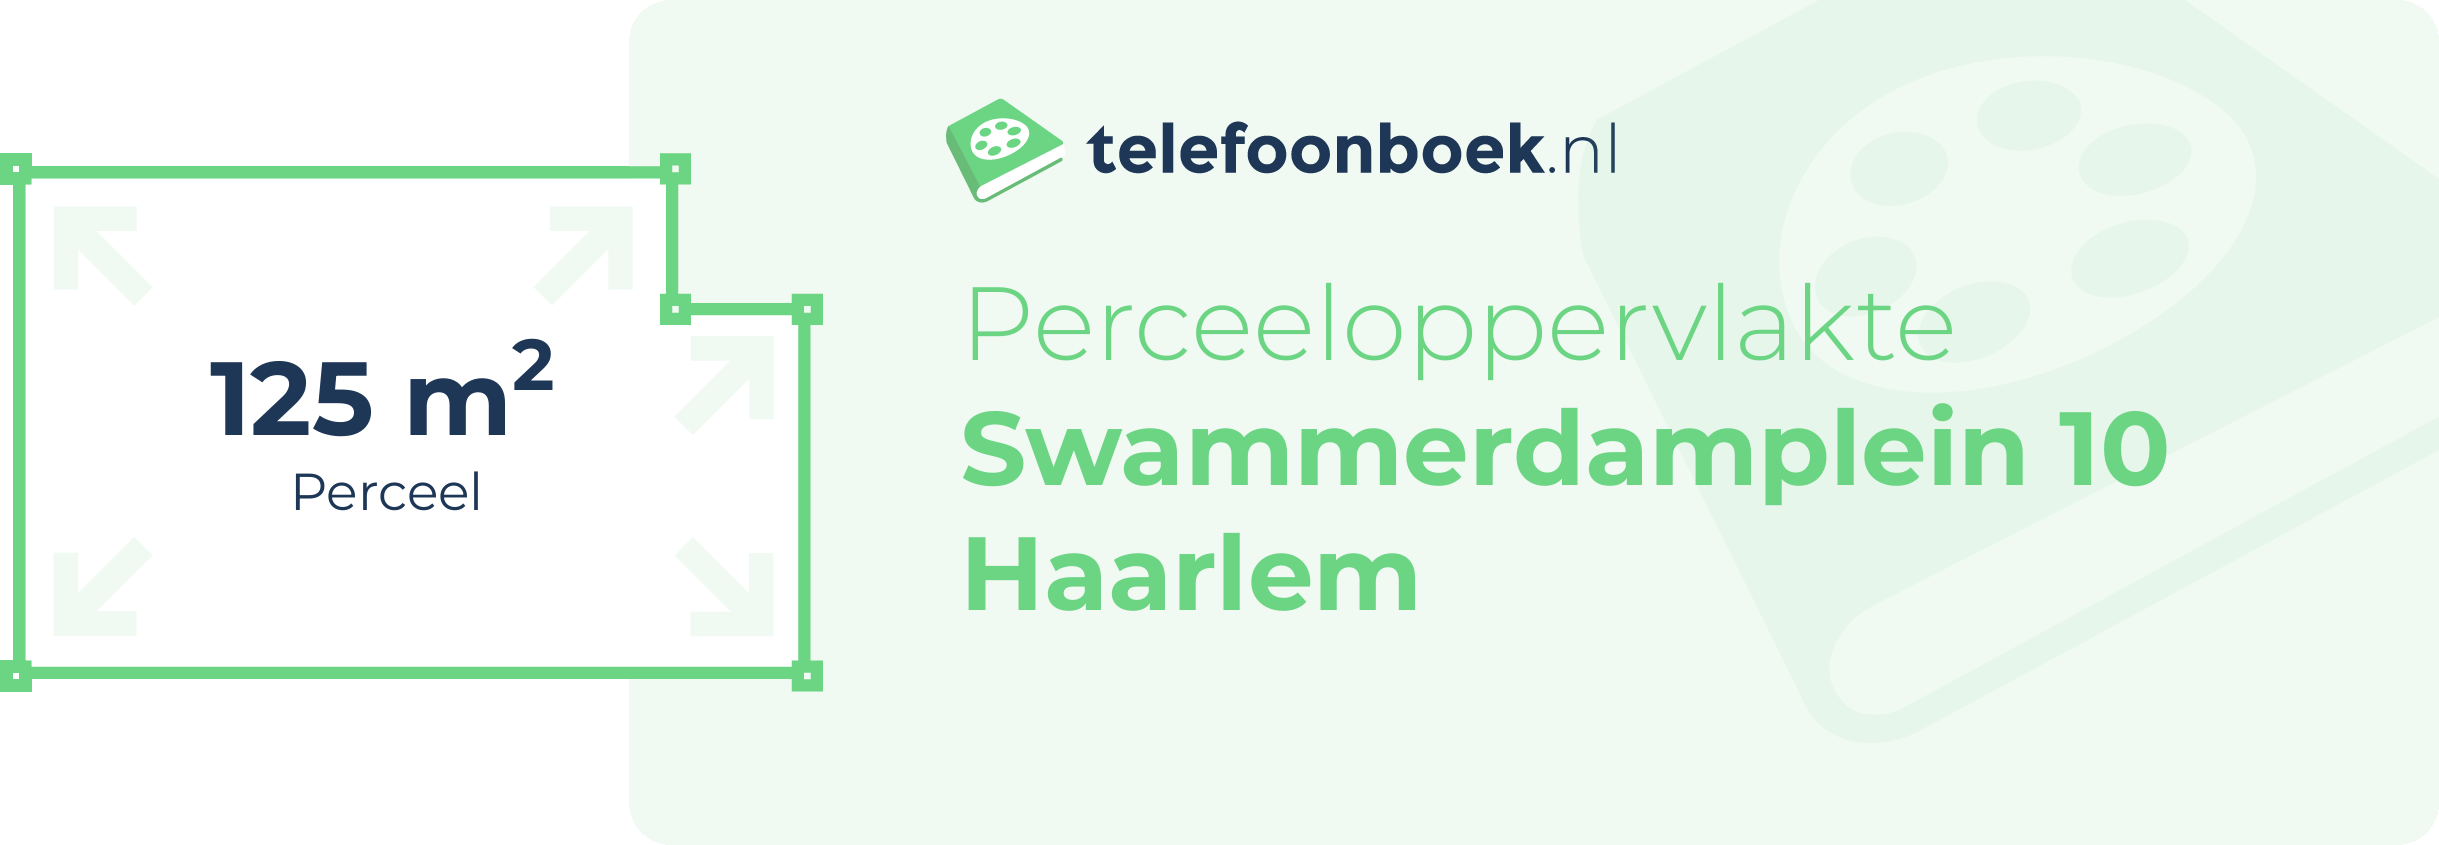 Perceeloppervlakte Swammerdamplein 10 Haarlem